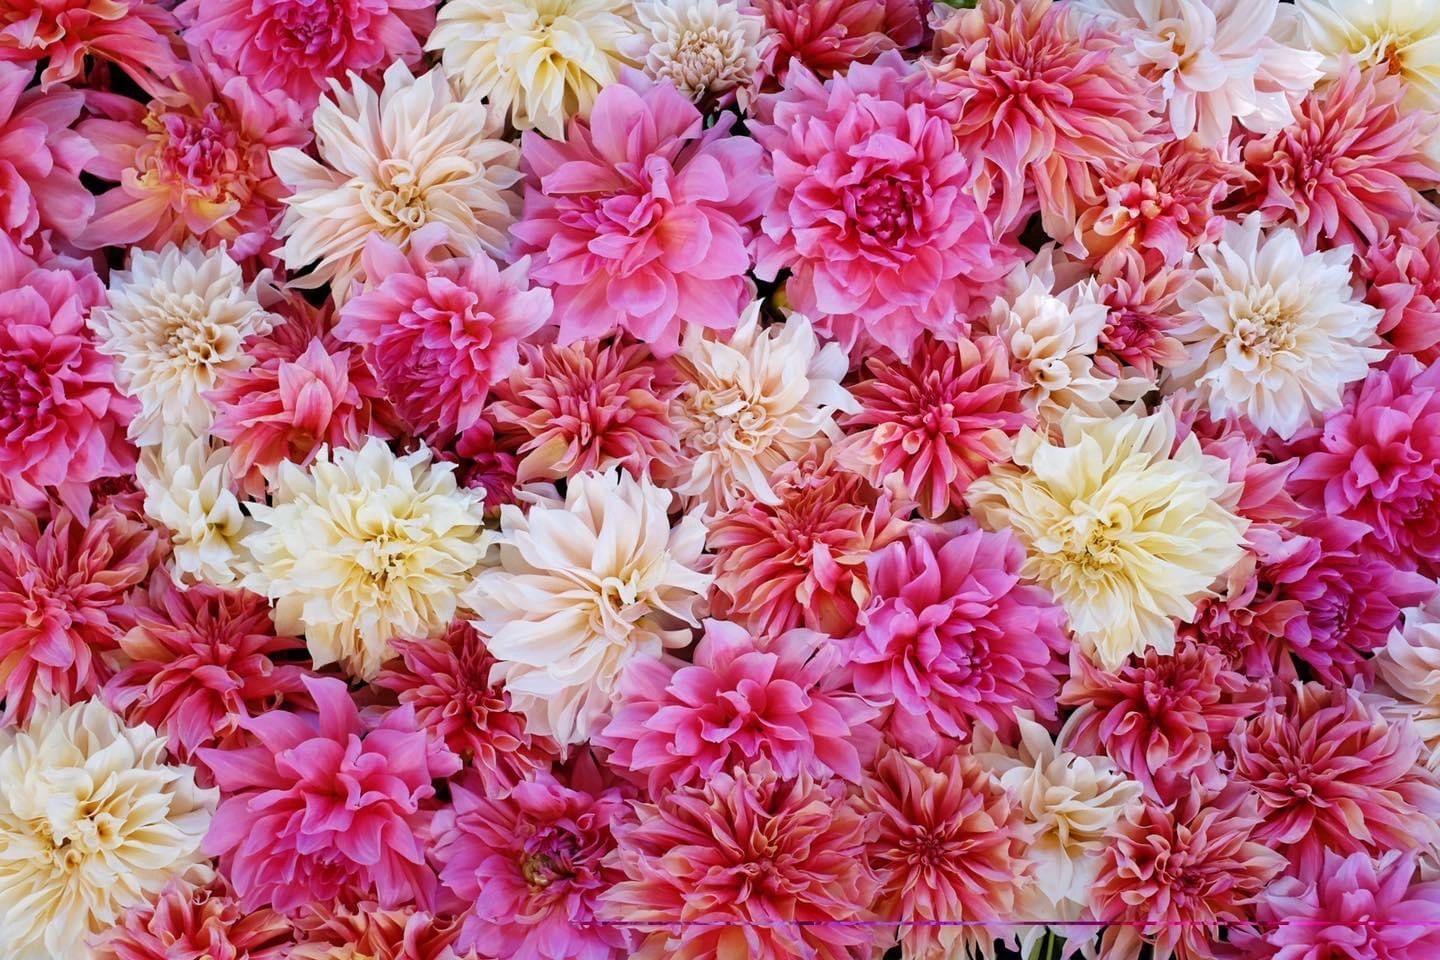 Wedding Flowers - Shannon’s Fresh Cut Farm Flowers